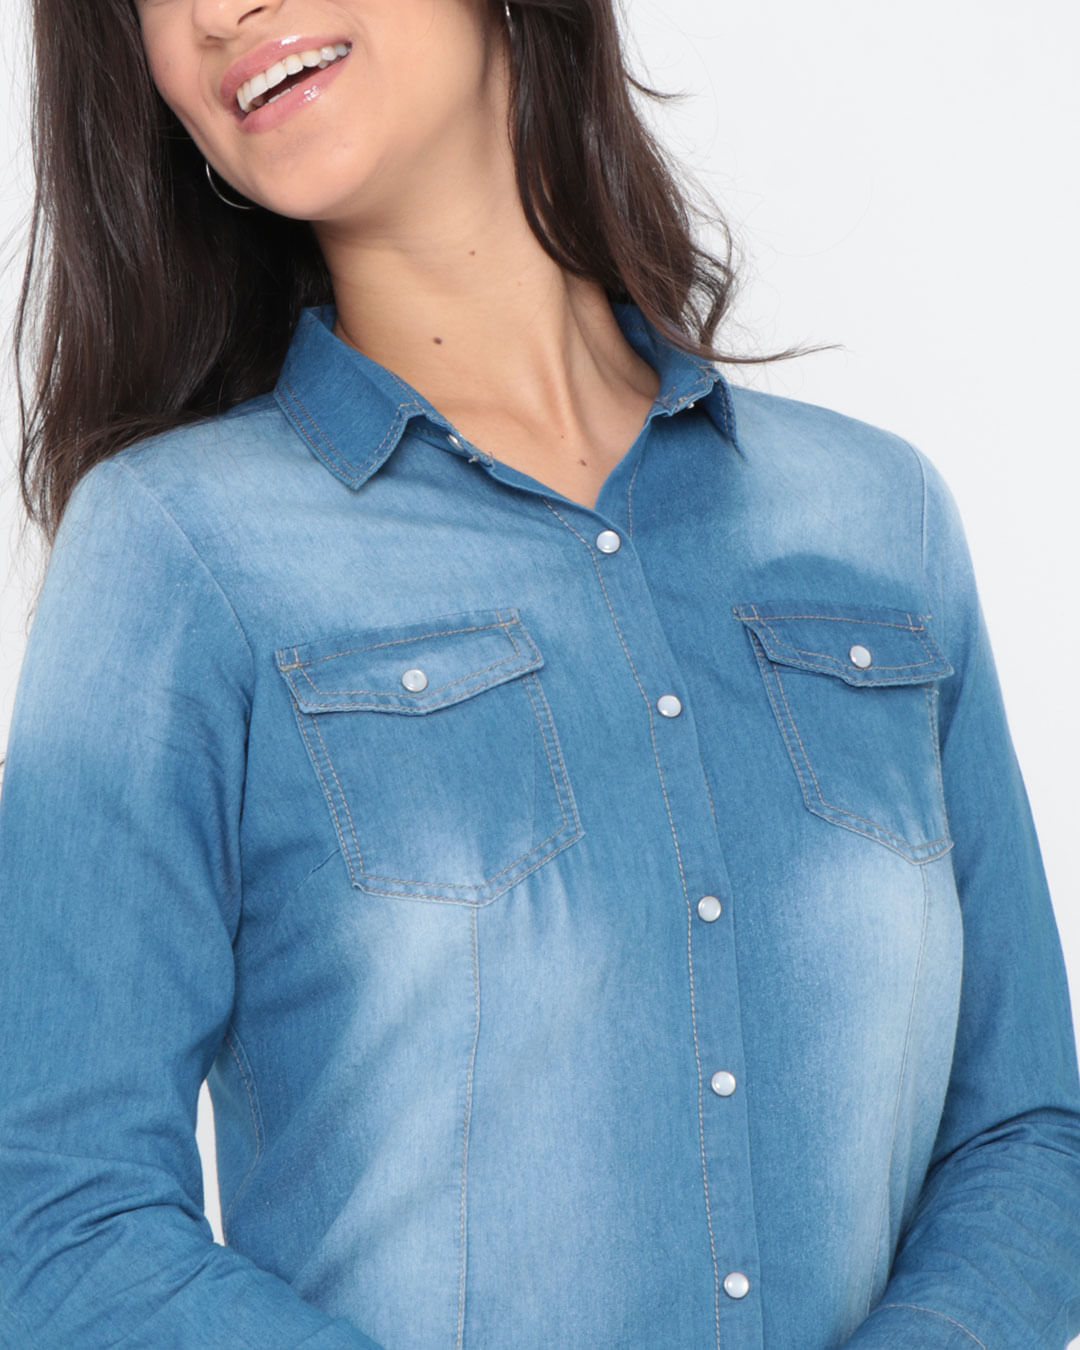 Camisa-Jeans-Feminina-Bolsos-Azul